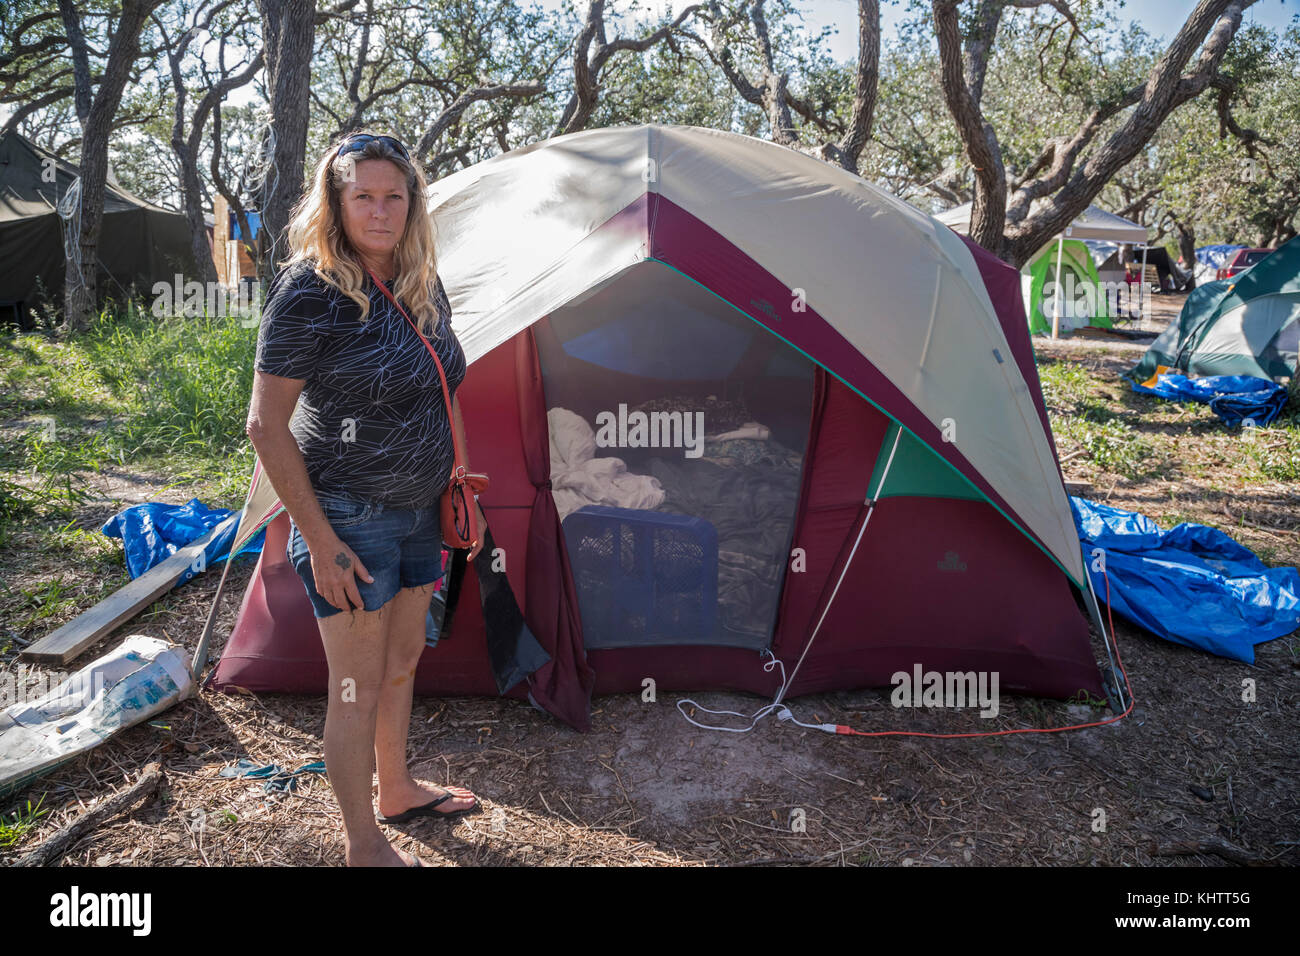 Rockport, Texas - Familien, die ihr Obdach verloren haben durch den Wirbelsturm Harvey lebten in Zelten in den Rockport relief Camp 10 Wochen nach dem Sturm South Texas Stockfoto